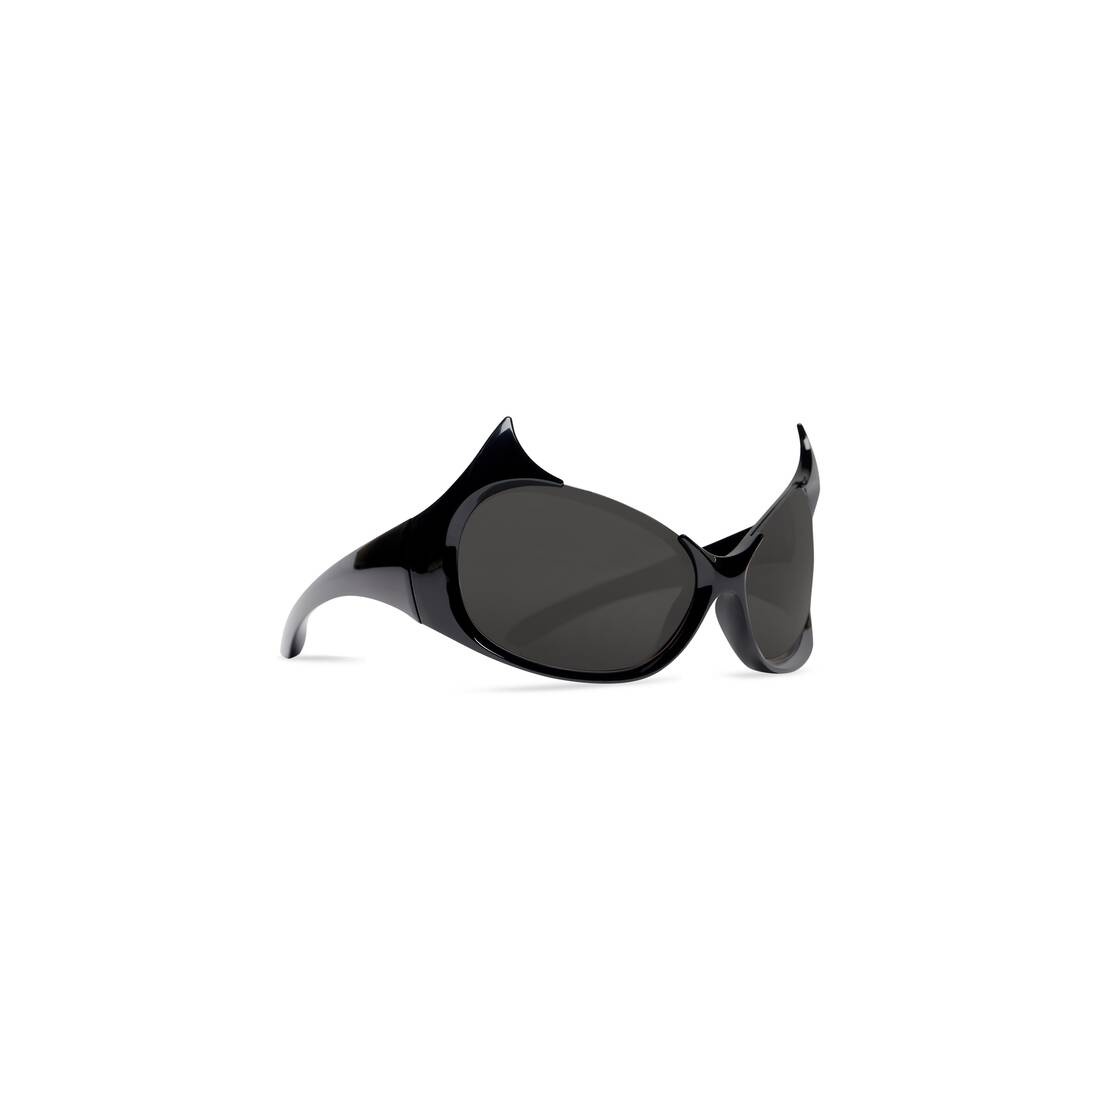 Gotham Cat Sunglasses in Black - 2